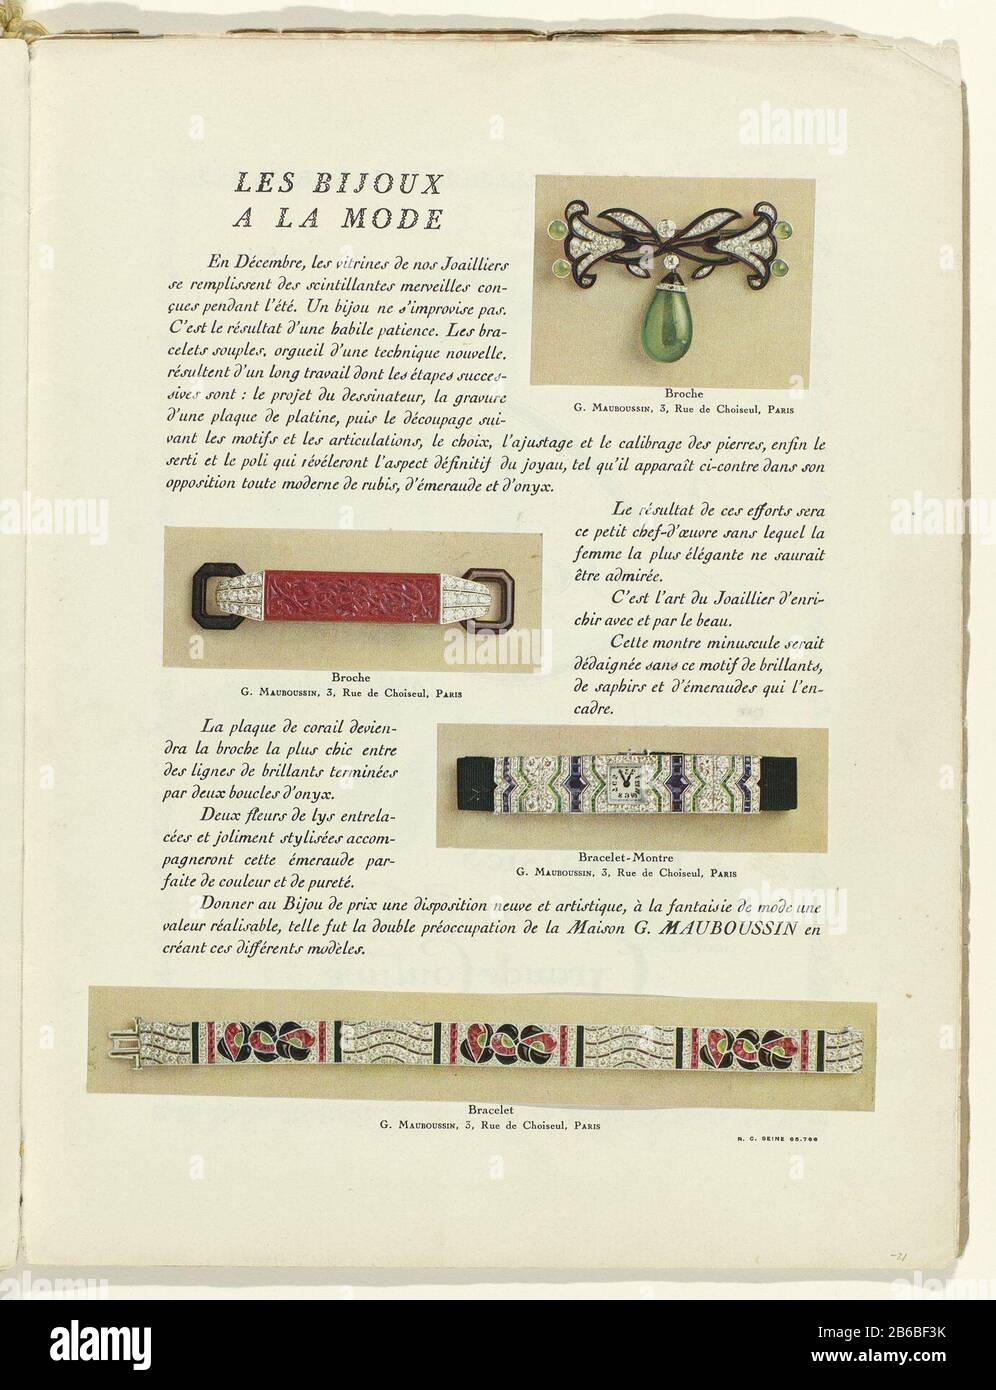 Text "Les bijoux a la mode 'with four illustrations of jewelry G.  Mauboussin, 3 Rue de Choiseul, Paris: Broche / Brooch / Bracelet-Montre /  Bracelet. Page of the fashion magazine Art-Gout-Beauté (1920-1933) .